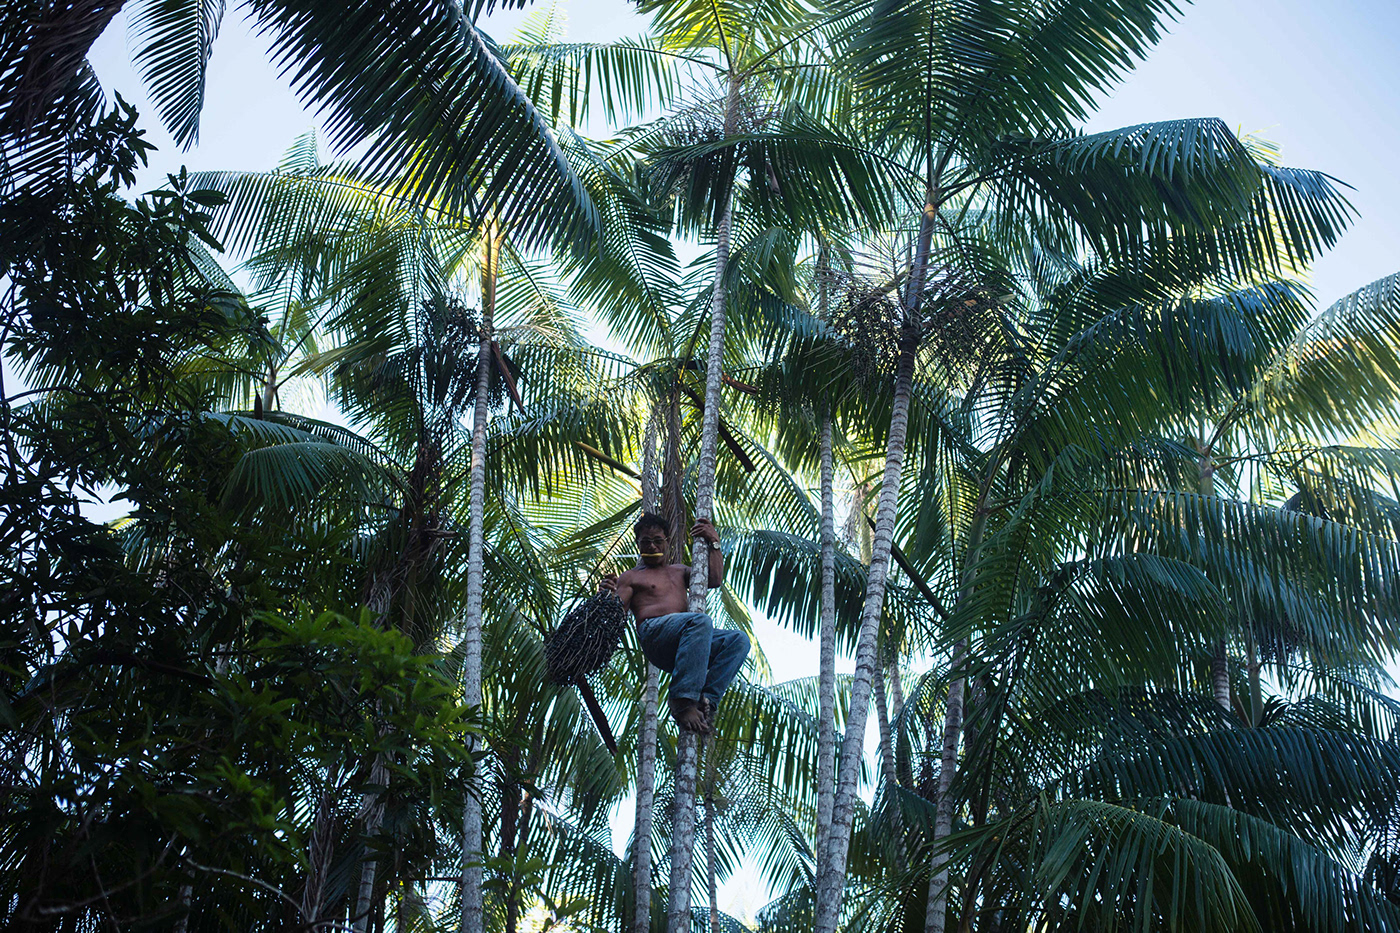 raw gold Brasil Amazon rainforest palm acai portrait Documentary  reportage